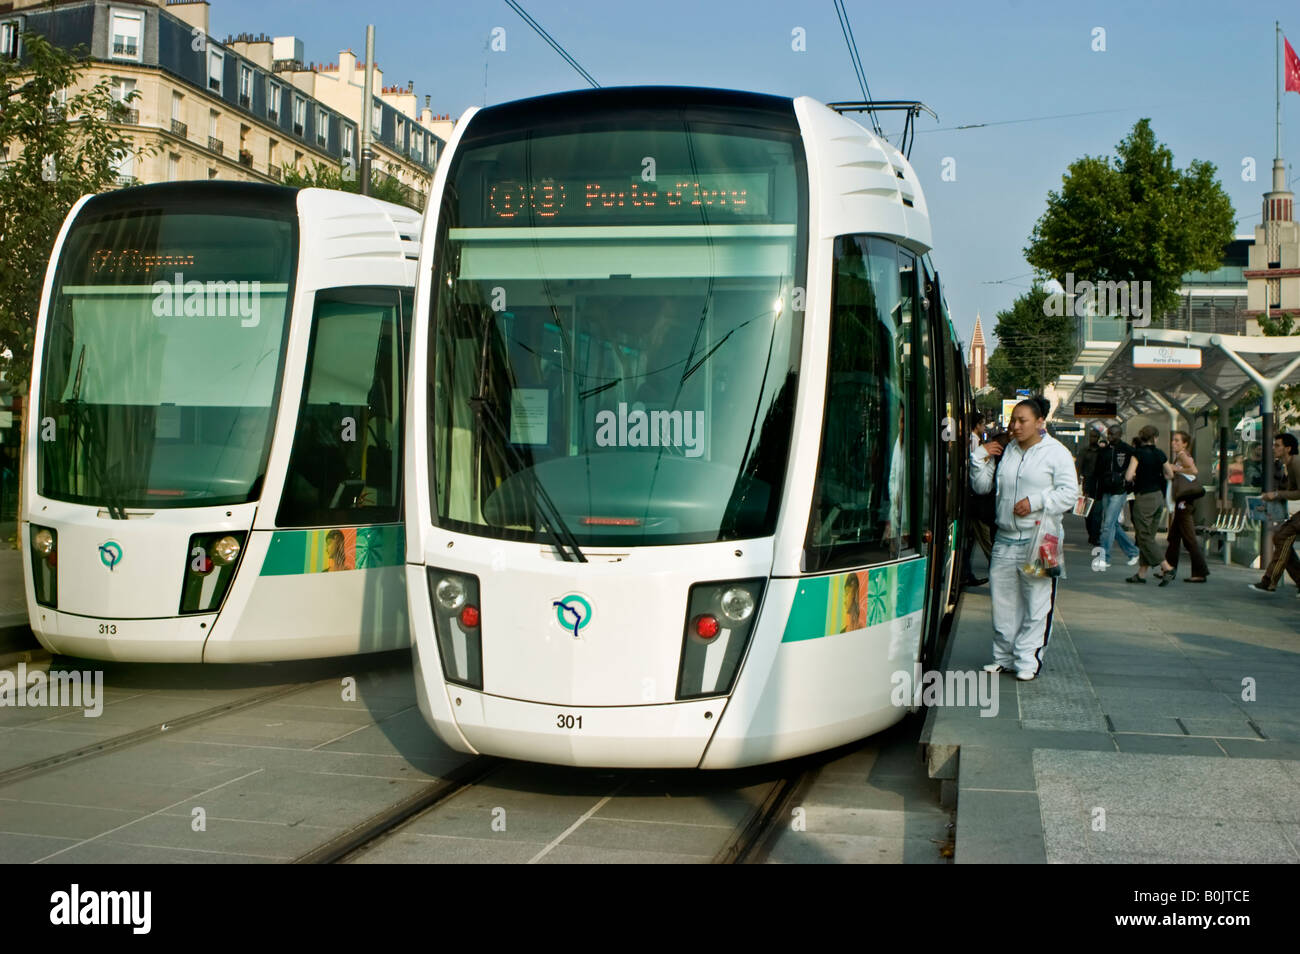 Paris France, transport public foule les gens qui montent sur la station de tramway, trains de banlieue, tramway paris, front Banque D'Images